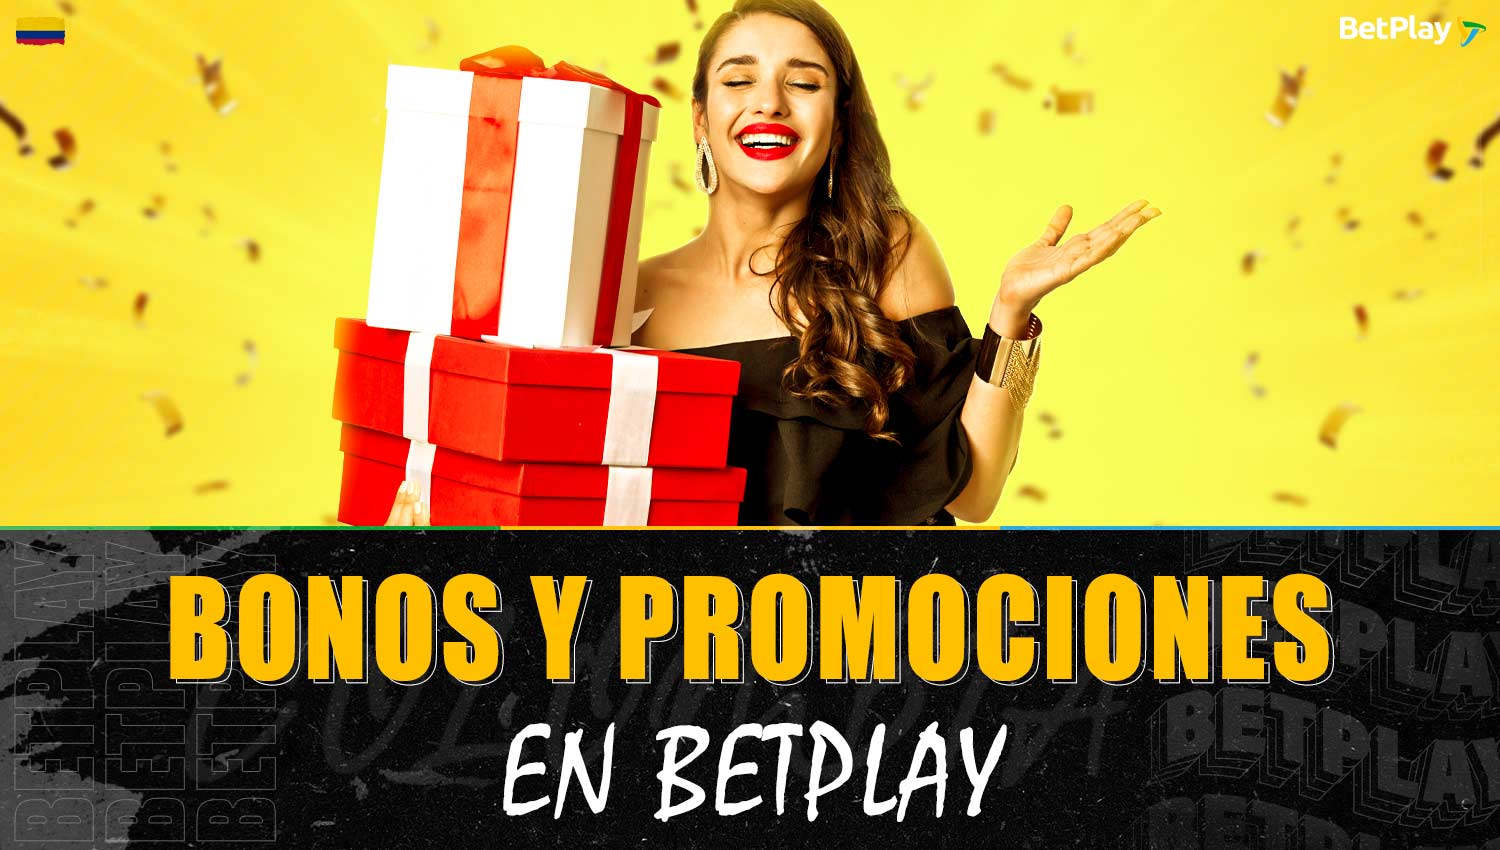 Información detallada sobre bonos y promociones en la plataforma Betplay Colombia